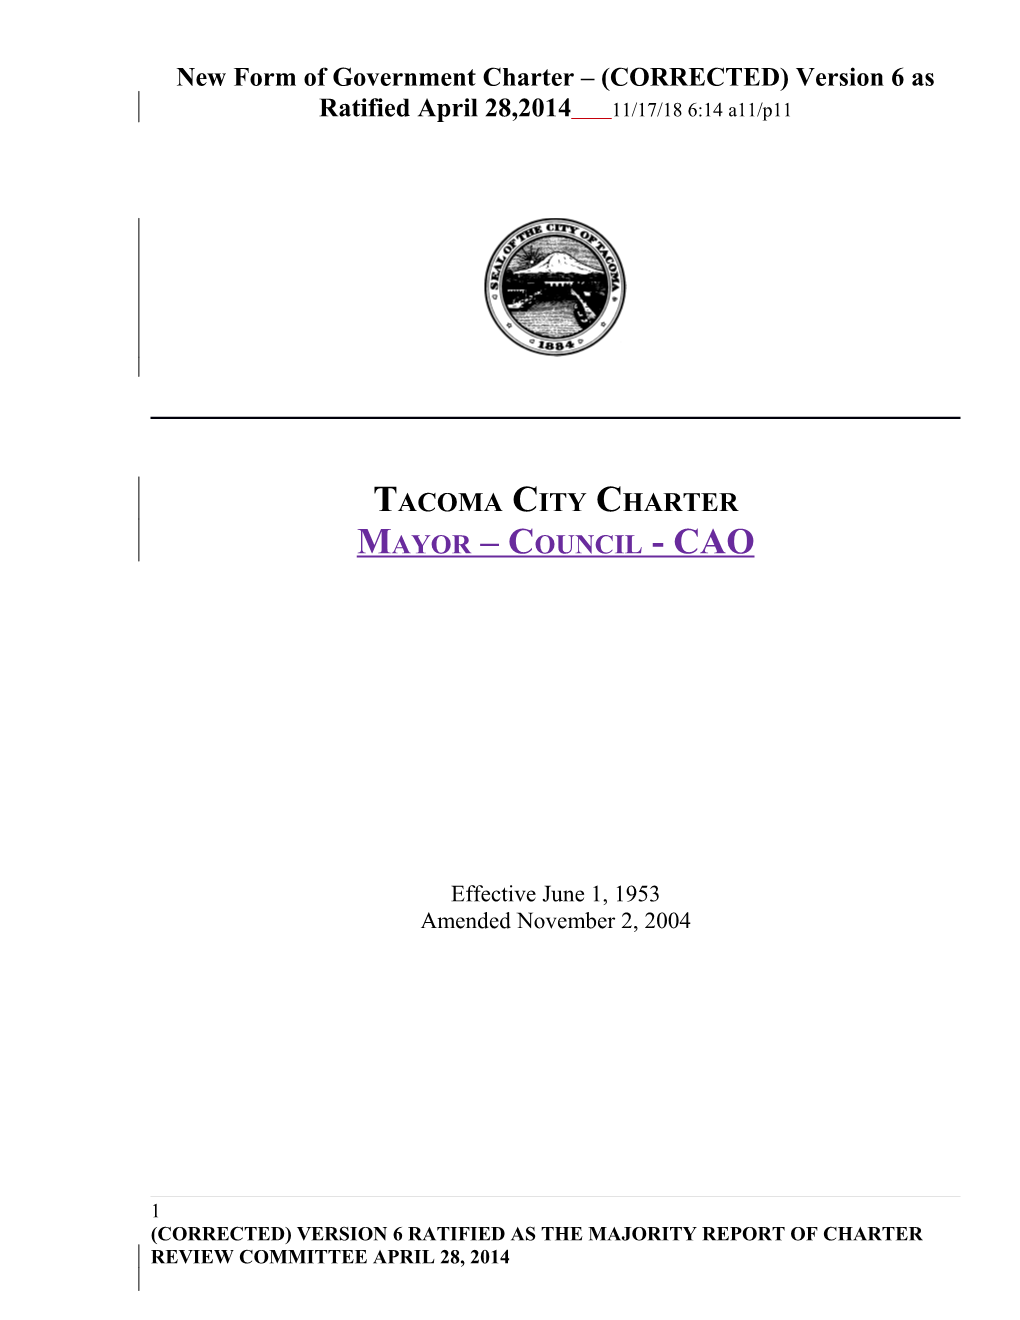 Tacoma City Charter